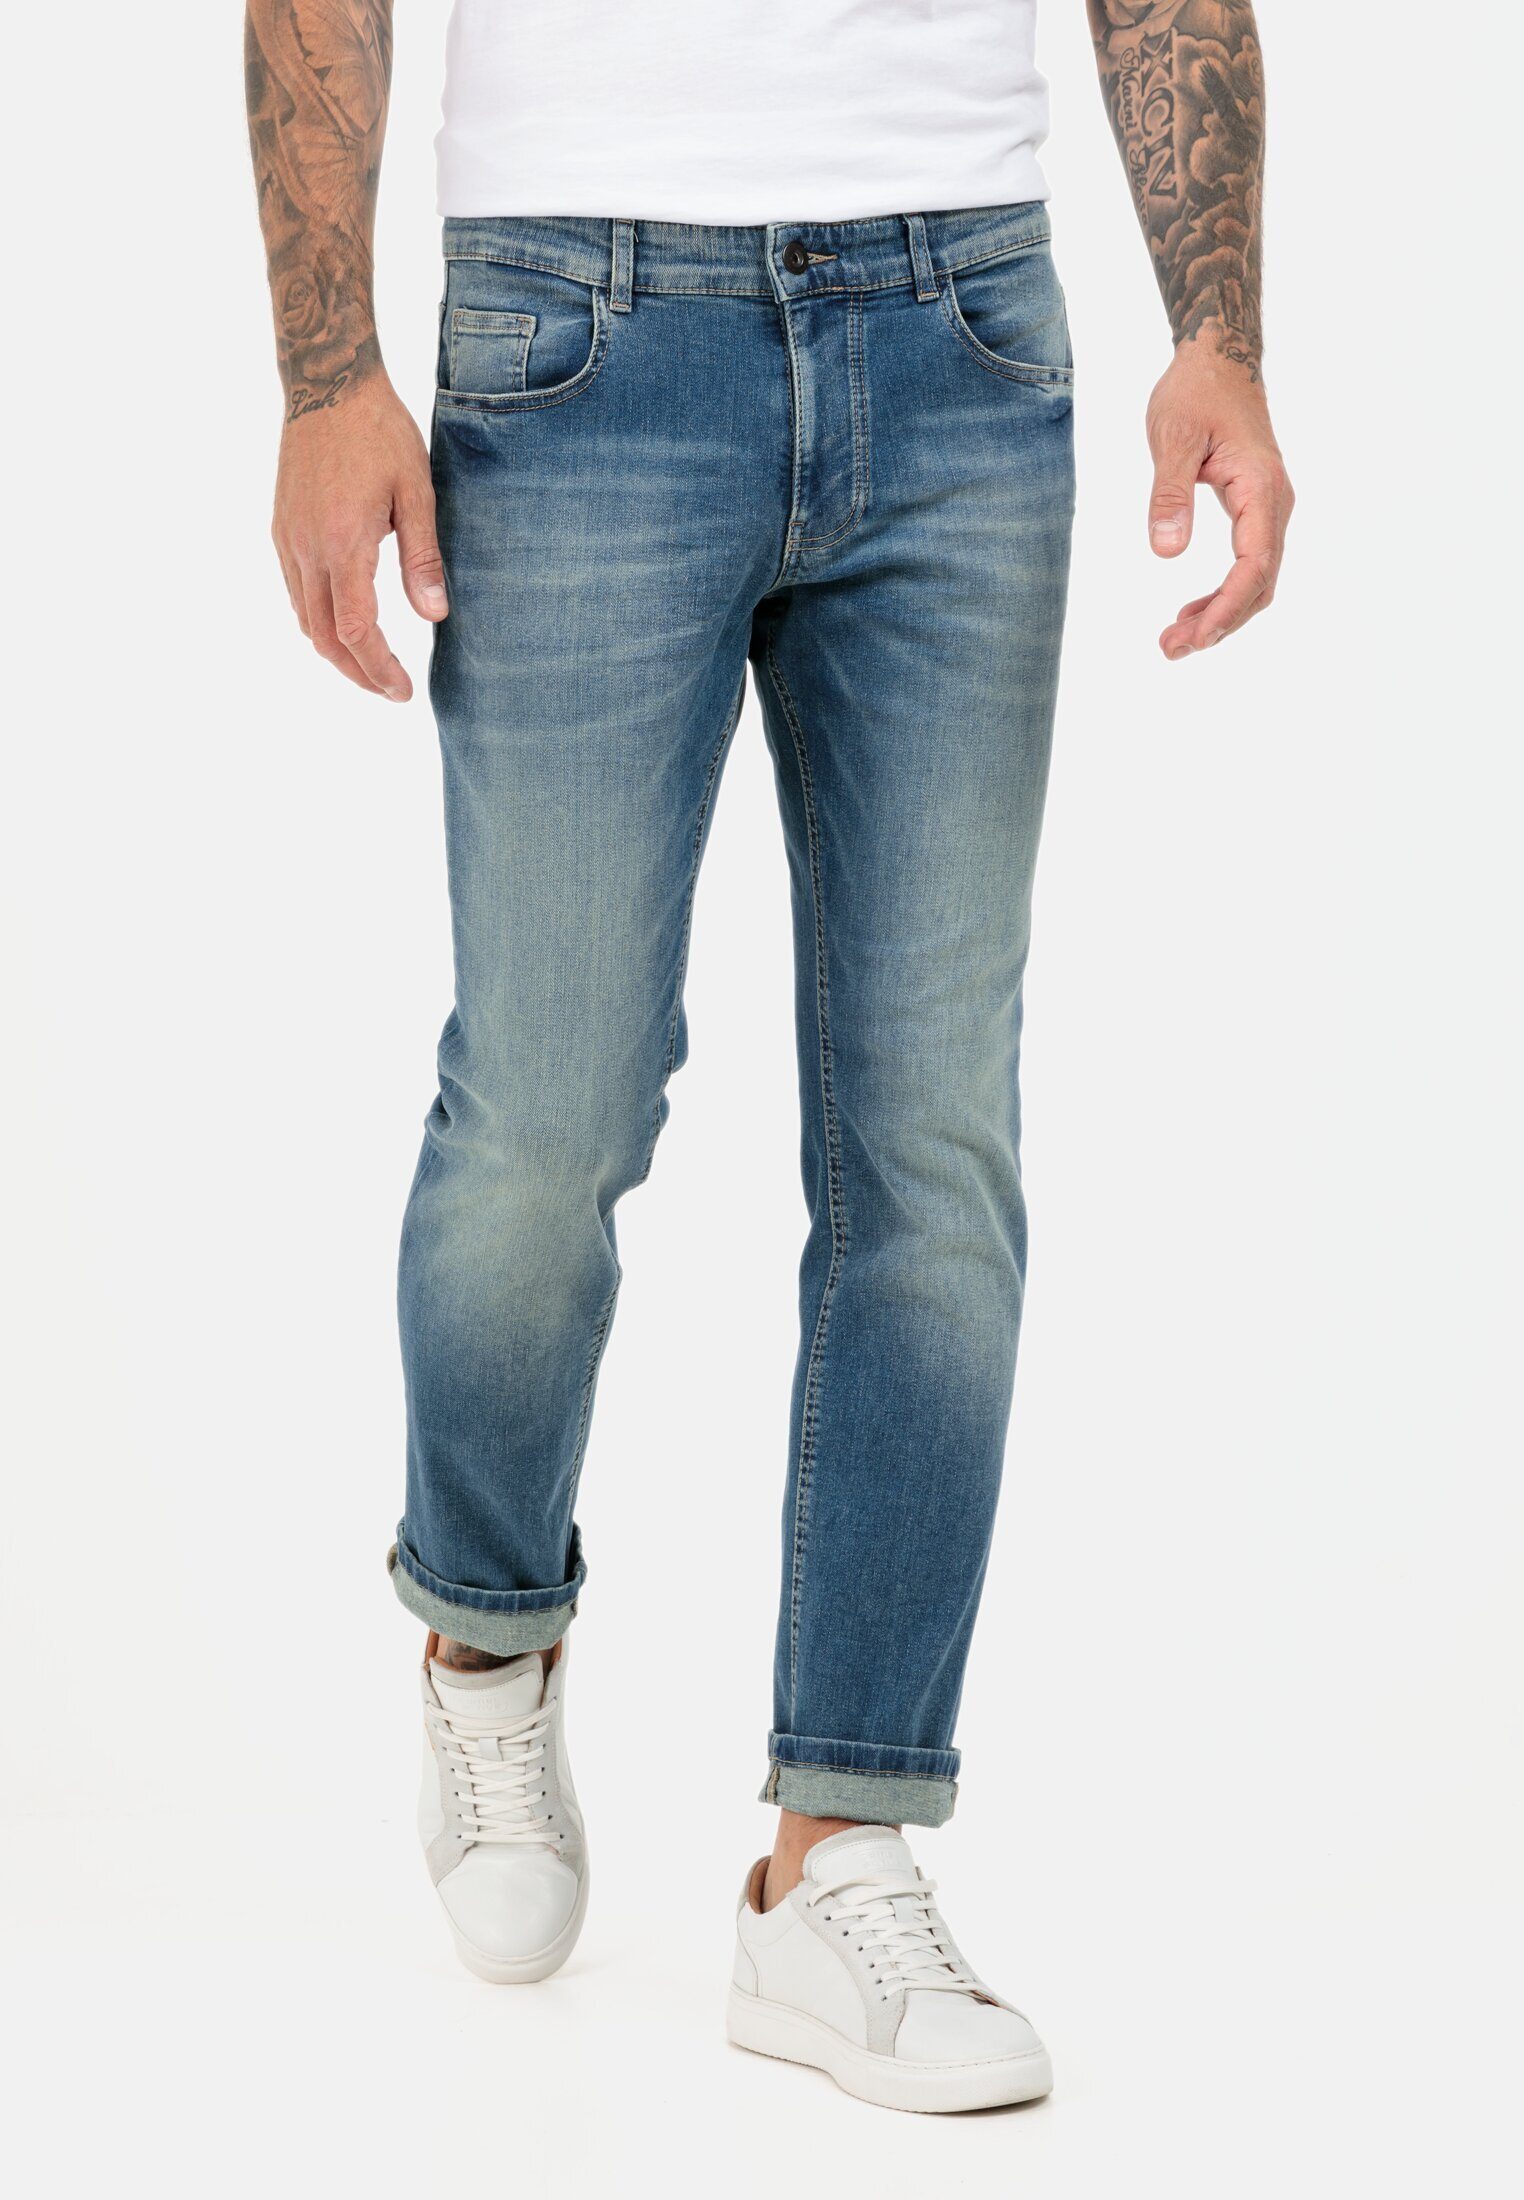 camel active 5-Pocket-Jeans Regular Fit Fit Regular Hellblau